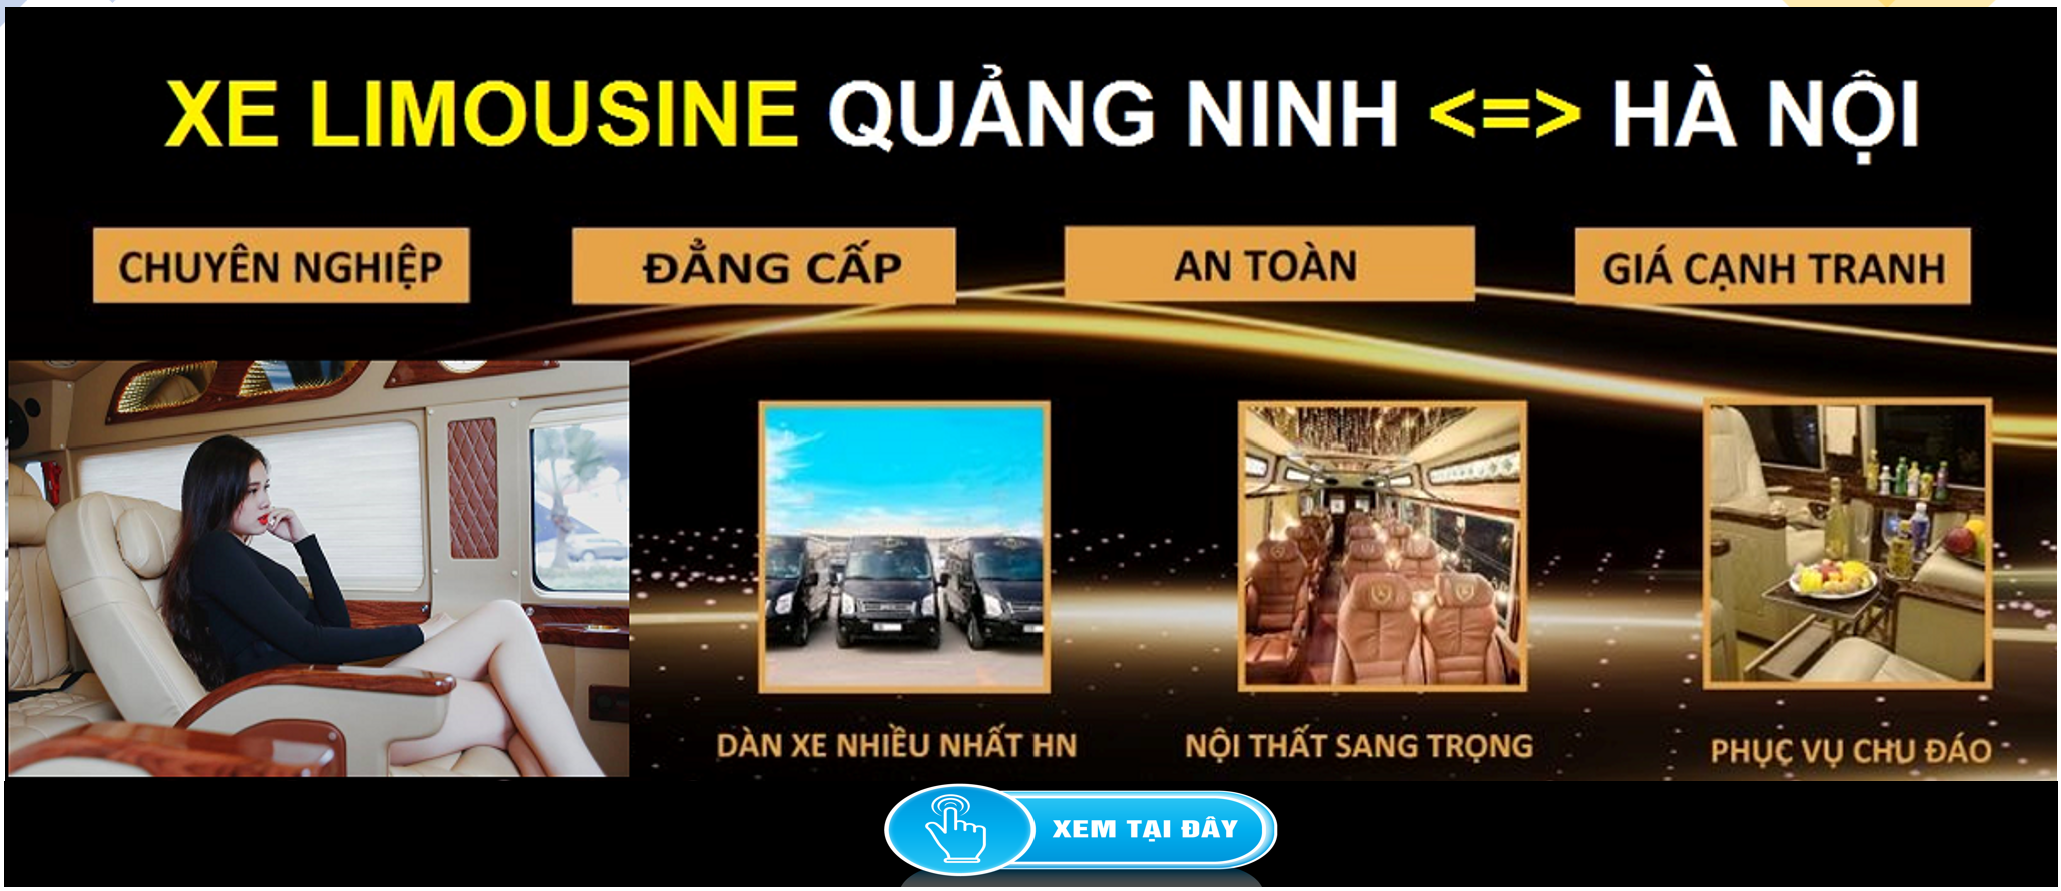 Xe Limousine Ha Noi Quang Ninh dua don tai nha 1d - Tờ khai lệ phí trước bạ nhà, đất mẫu số 01/LPTB